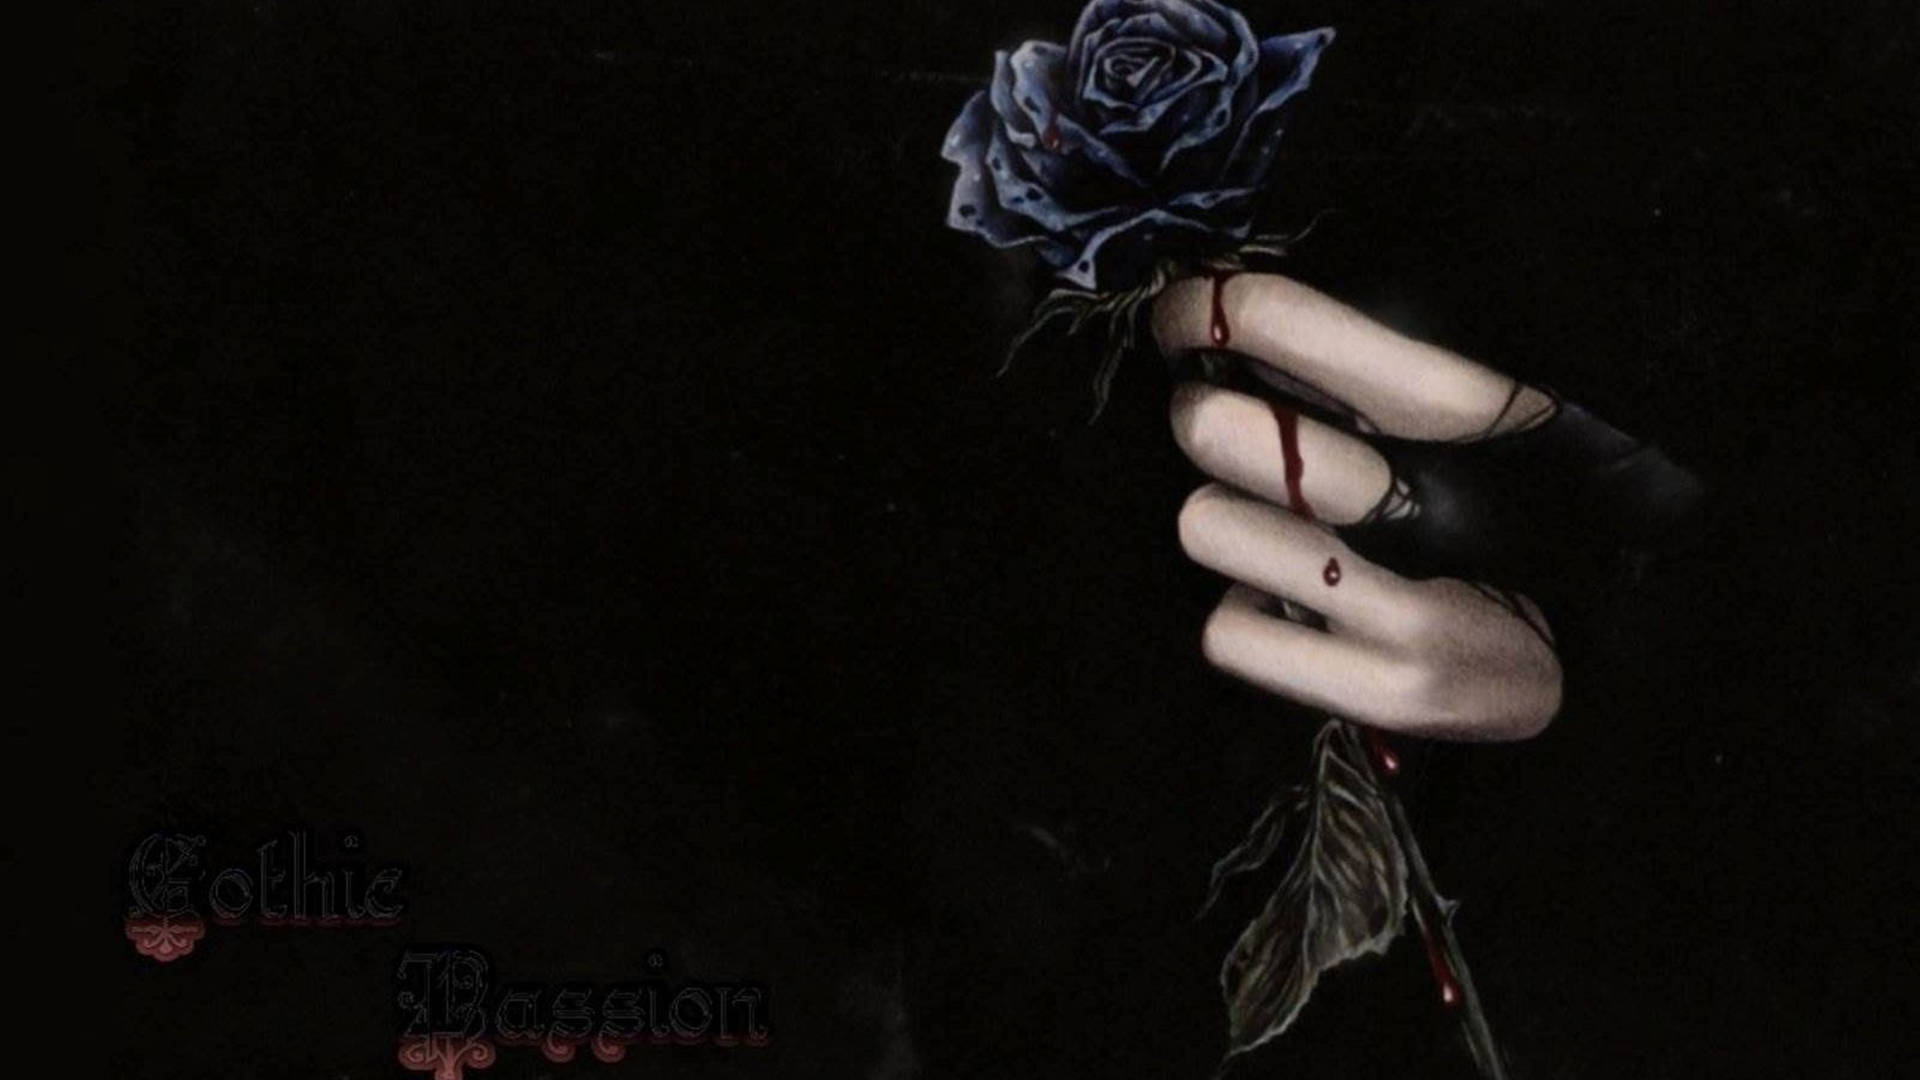  Schwarze Rosen Hintergrundbild 1920x1080. Downloaden 4khand, Die Eine Schwarze Rose Hält. Wallpaper